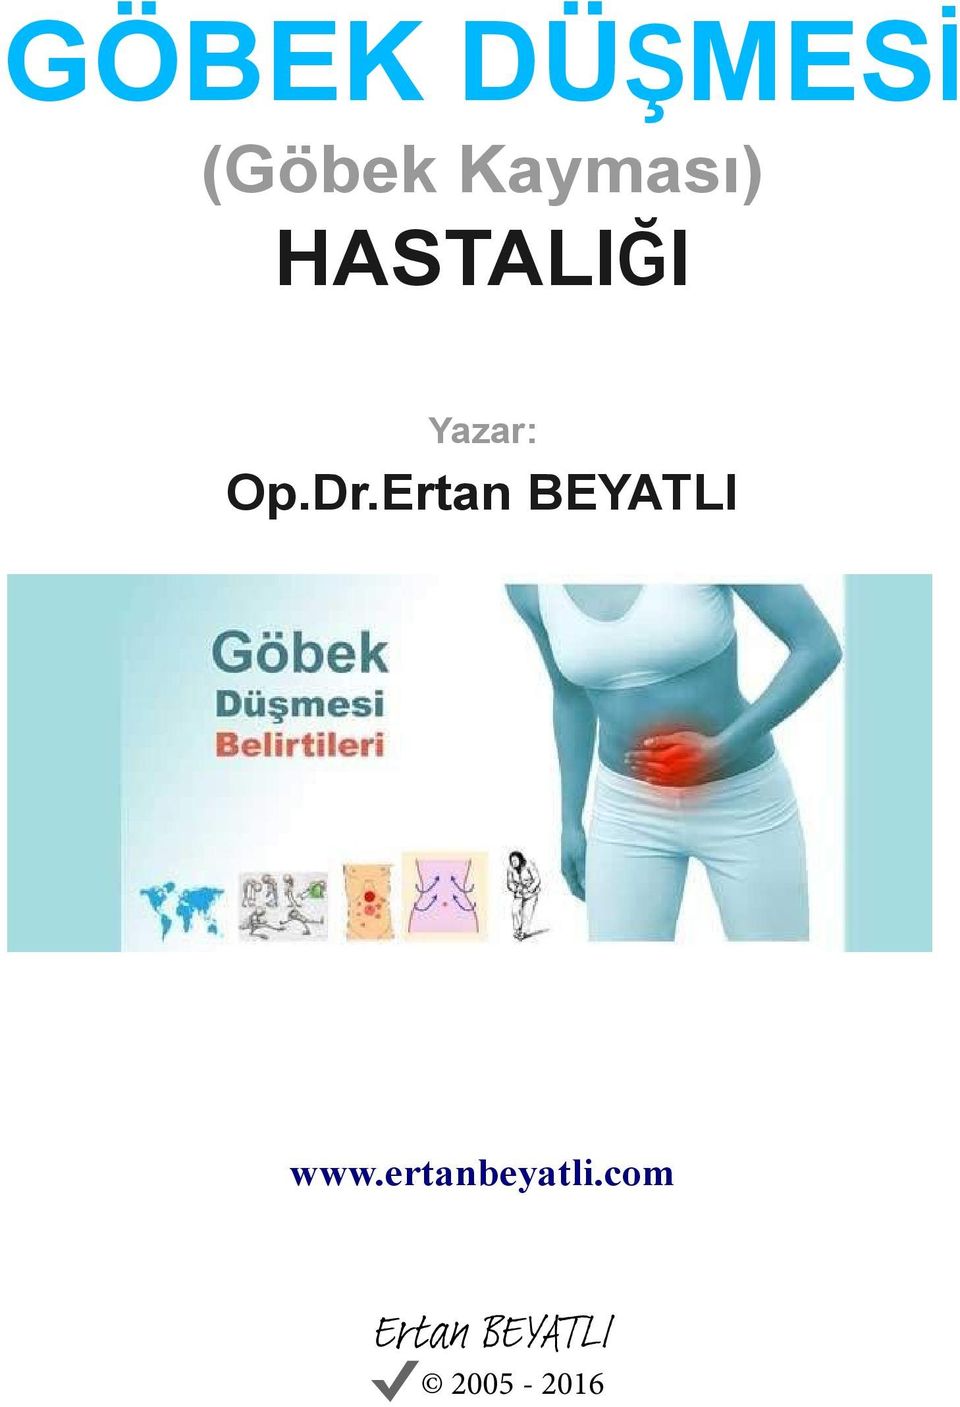 Op.Dr.Ertan BEYATLI www.